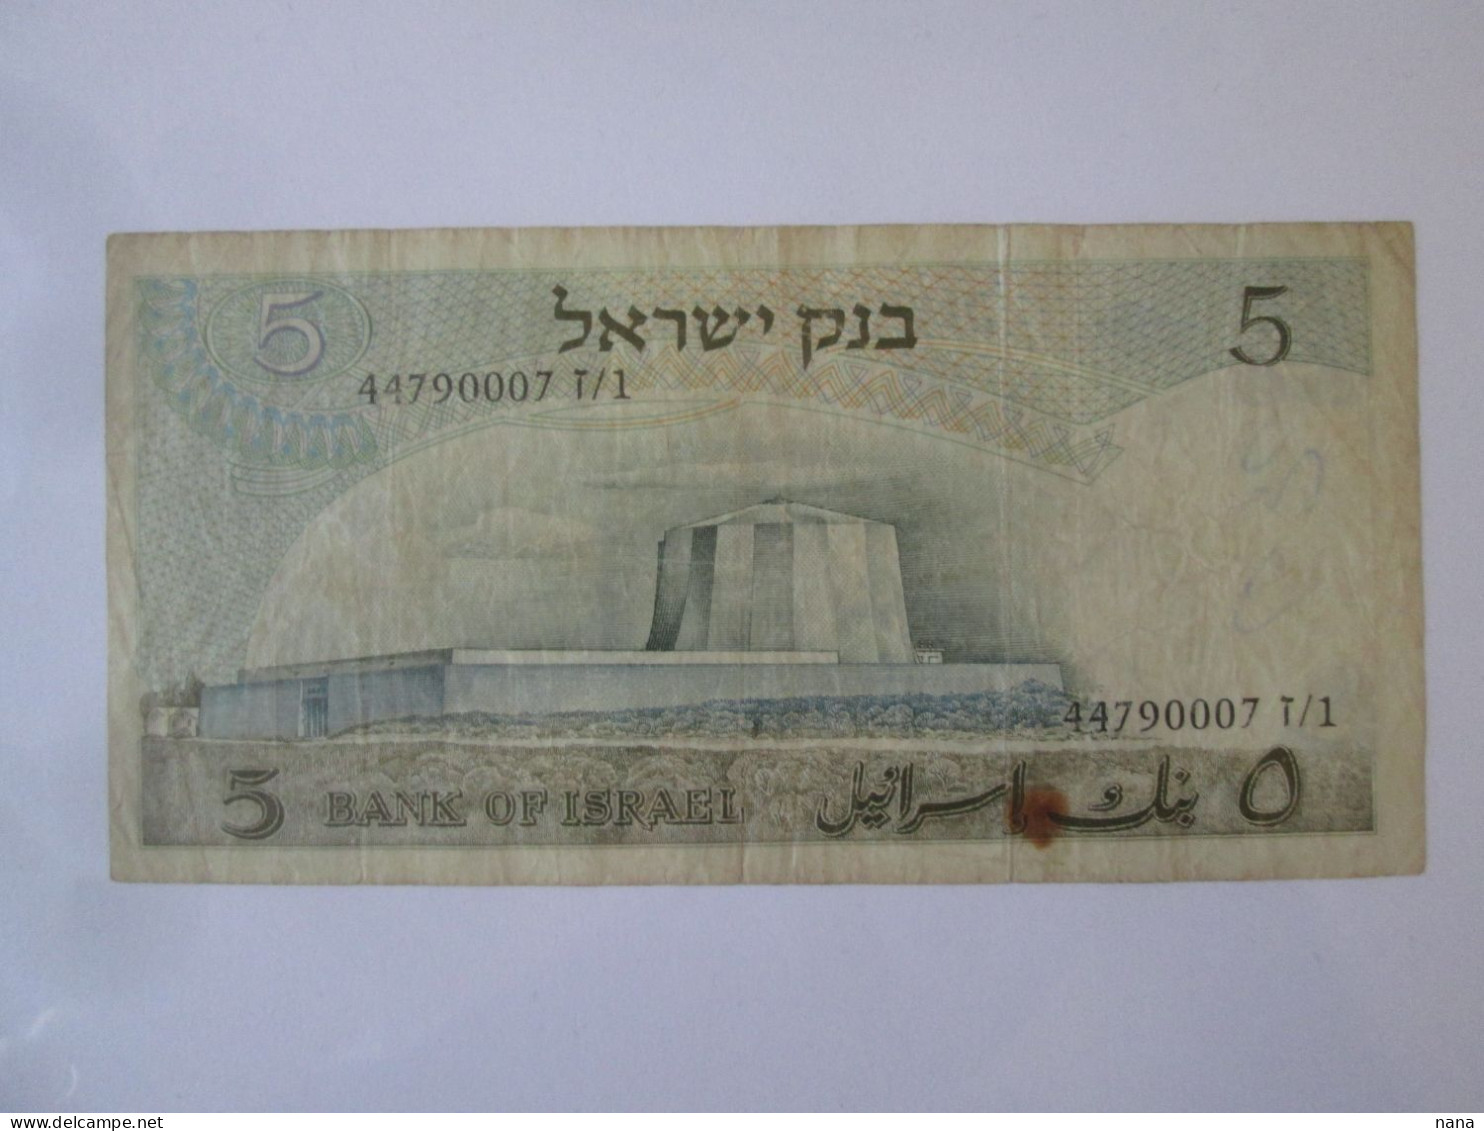 Israel 5 Lirot 1968 Banknote Series:44790007 Albert Einstein - Israele